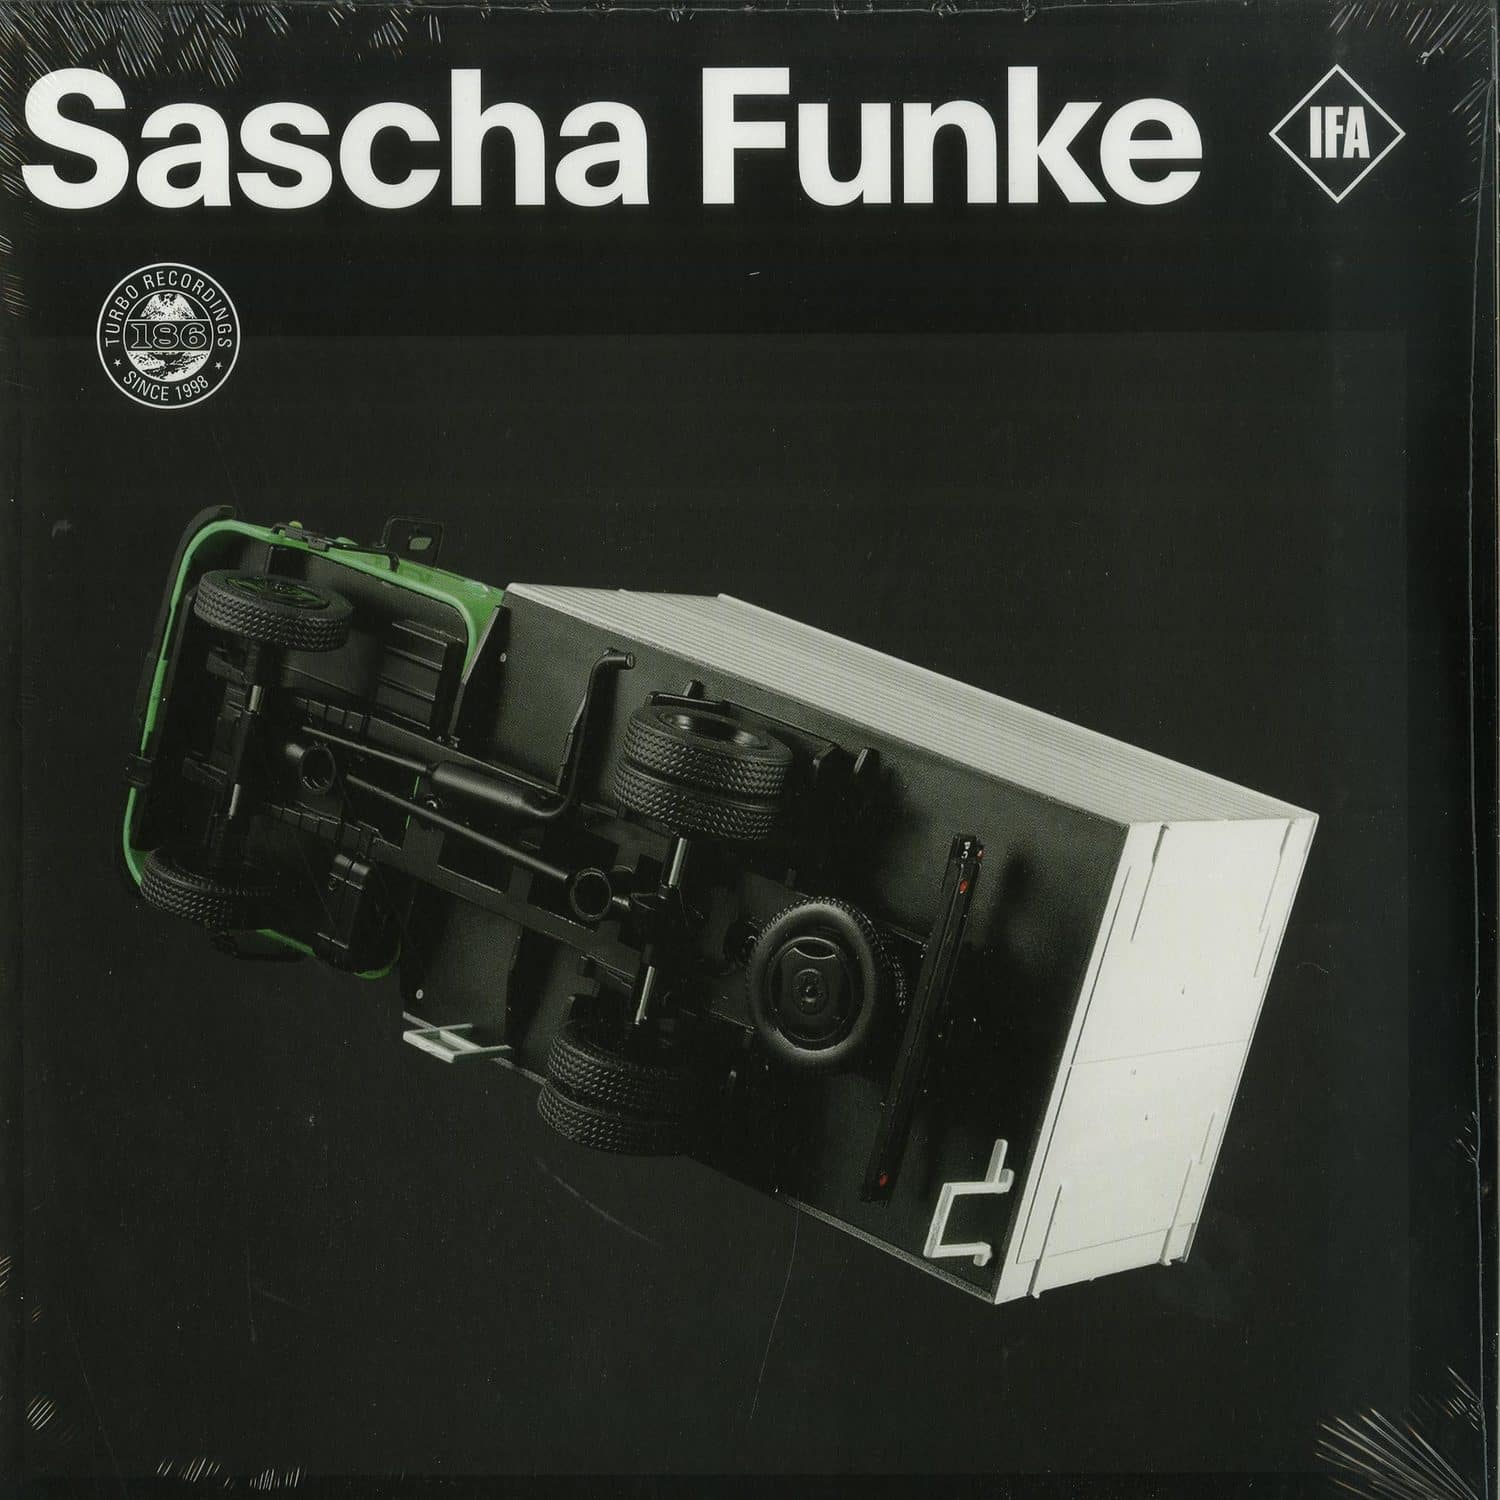 Sascha Funke - IFA 